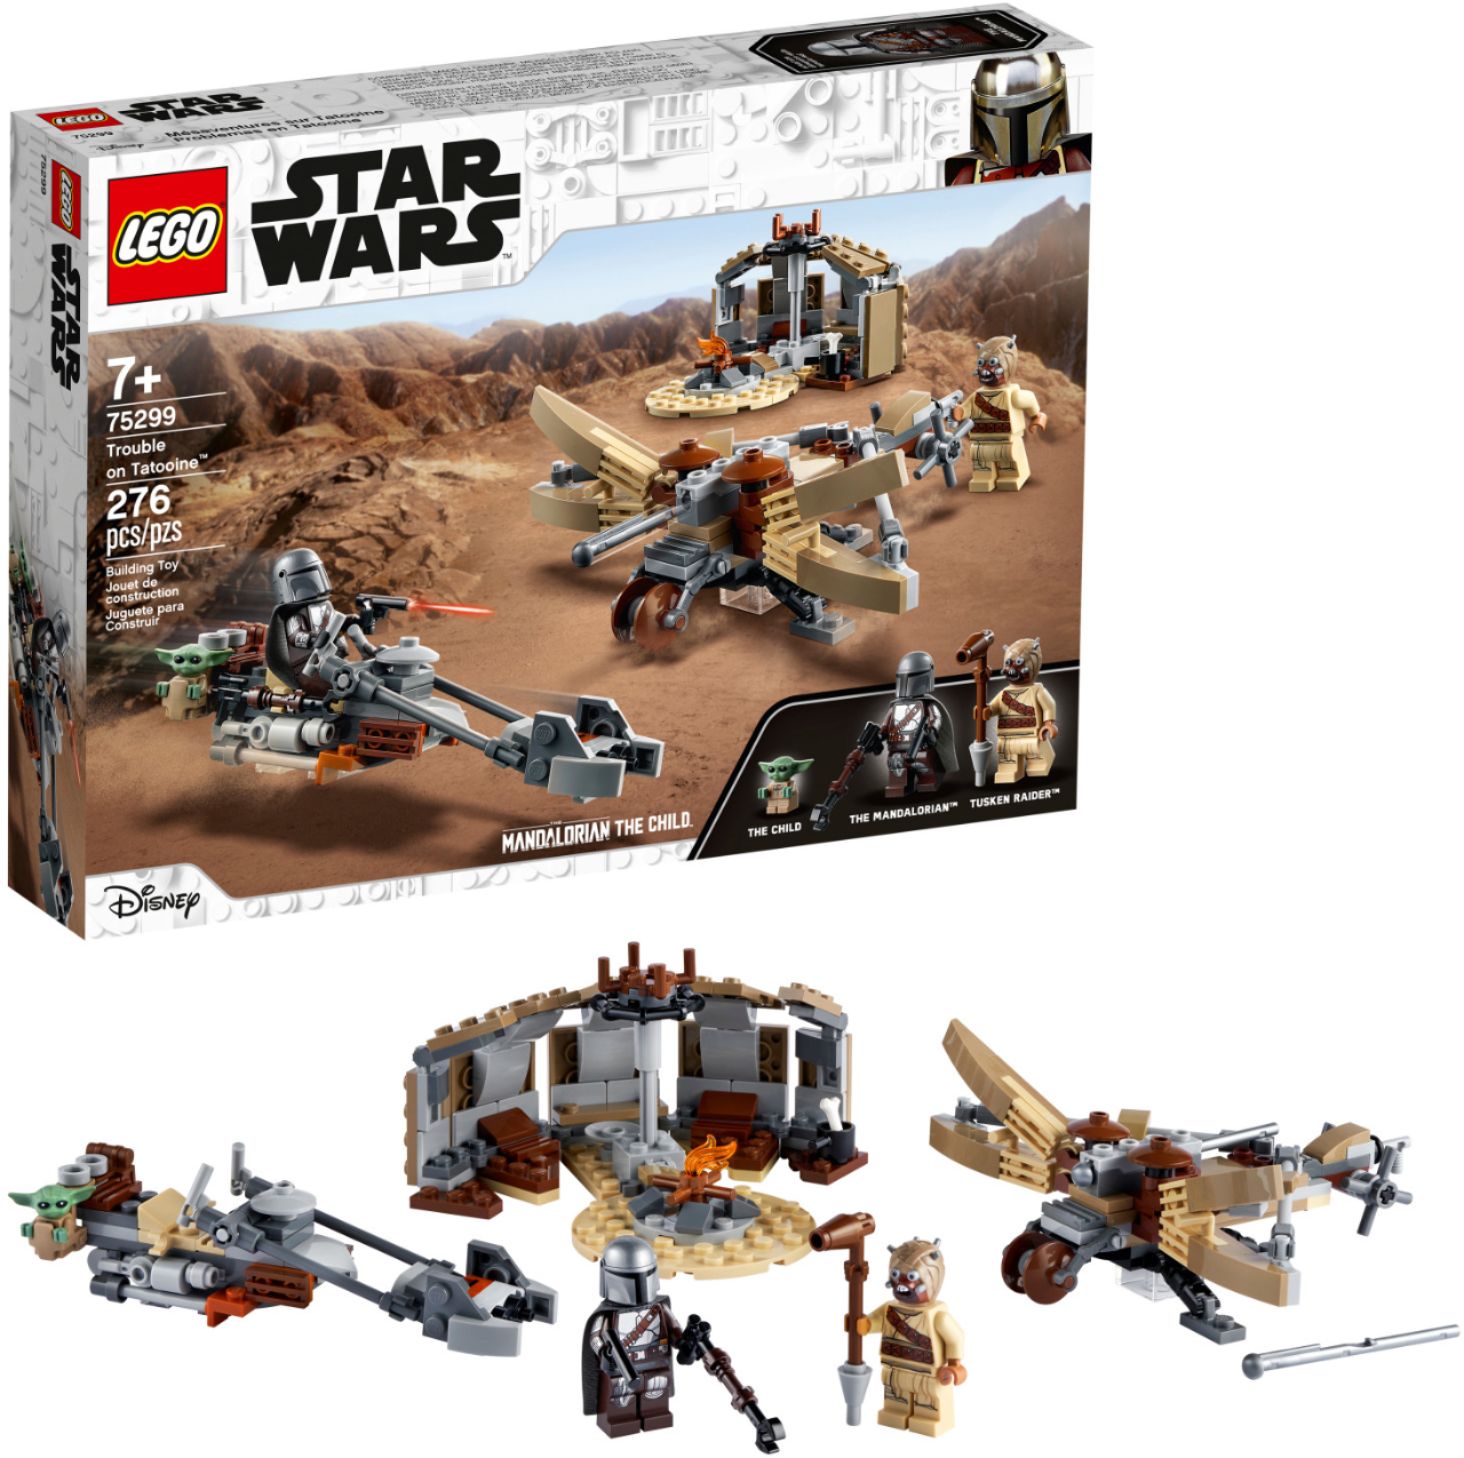 LEGO Wars on Tatooine 75299 6332846 - Buy